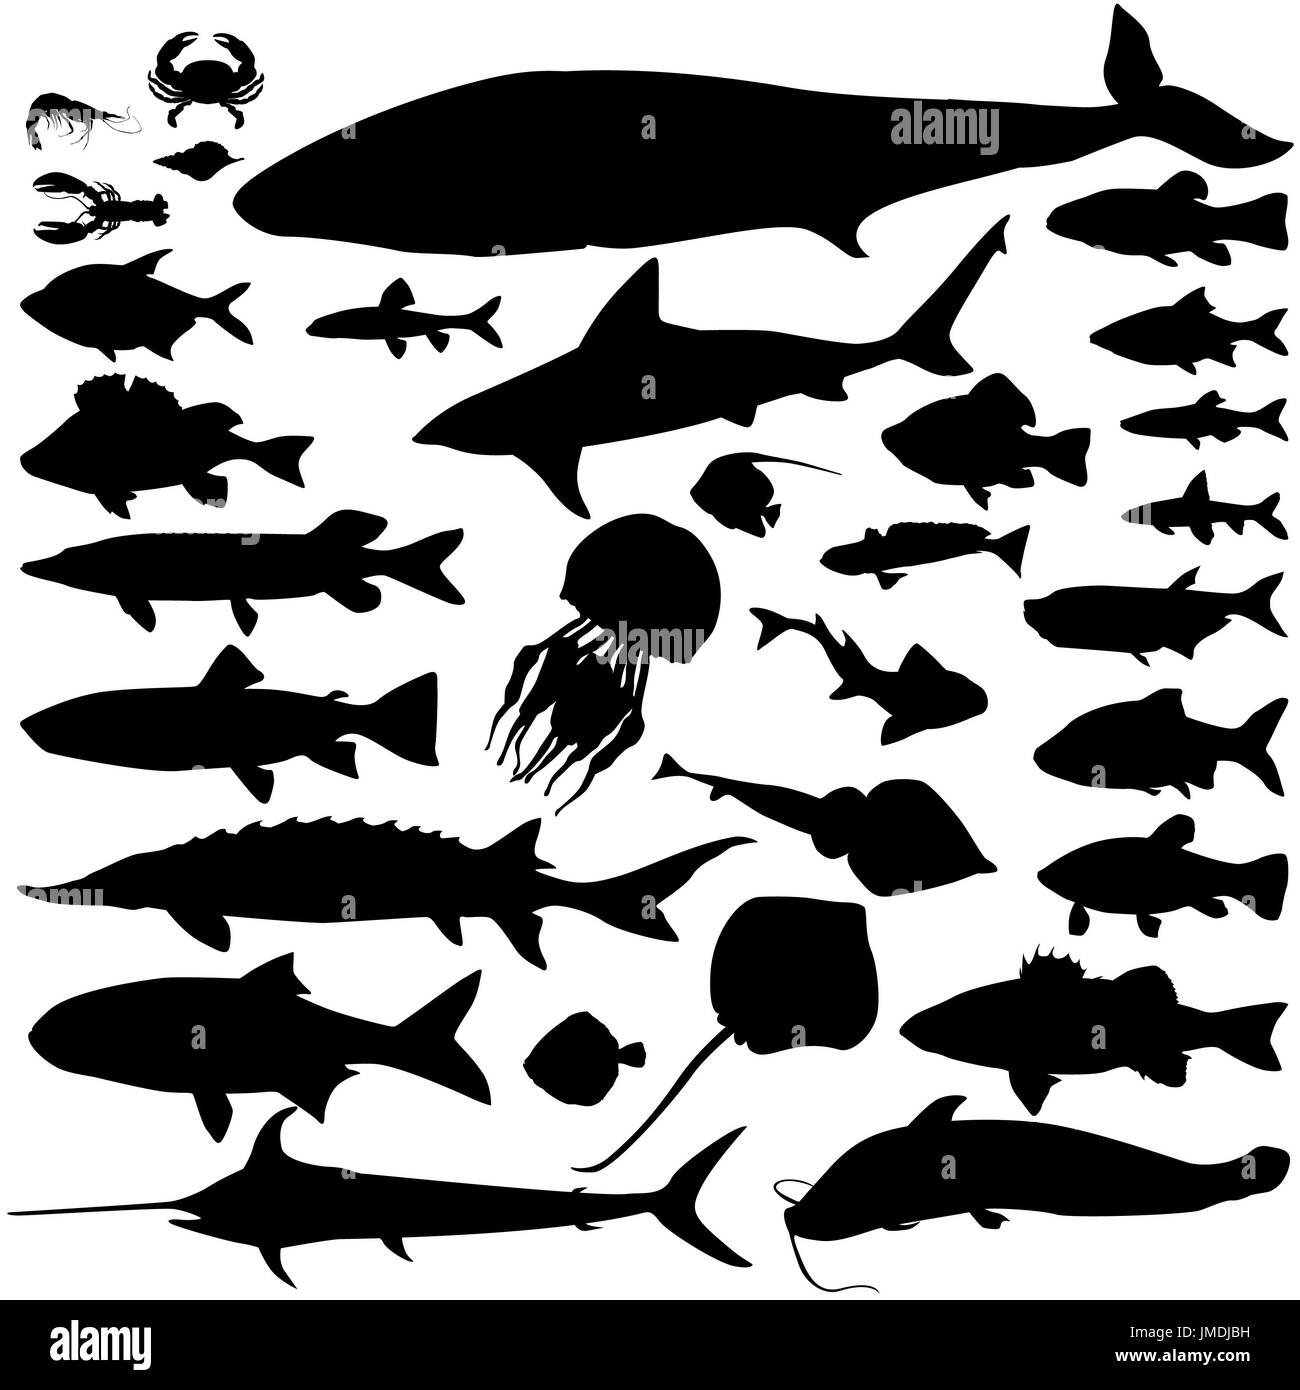 Fluss, Meer Fisch essen Silhouette Satz. Mariner Fische und Säugetiere. Meeresfrüchte-Icon-Sammlung. Ozean Unterwasser Tierwelt Zeichen Stockfoto